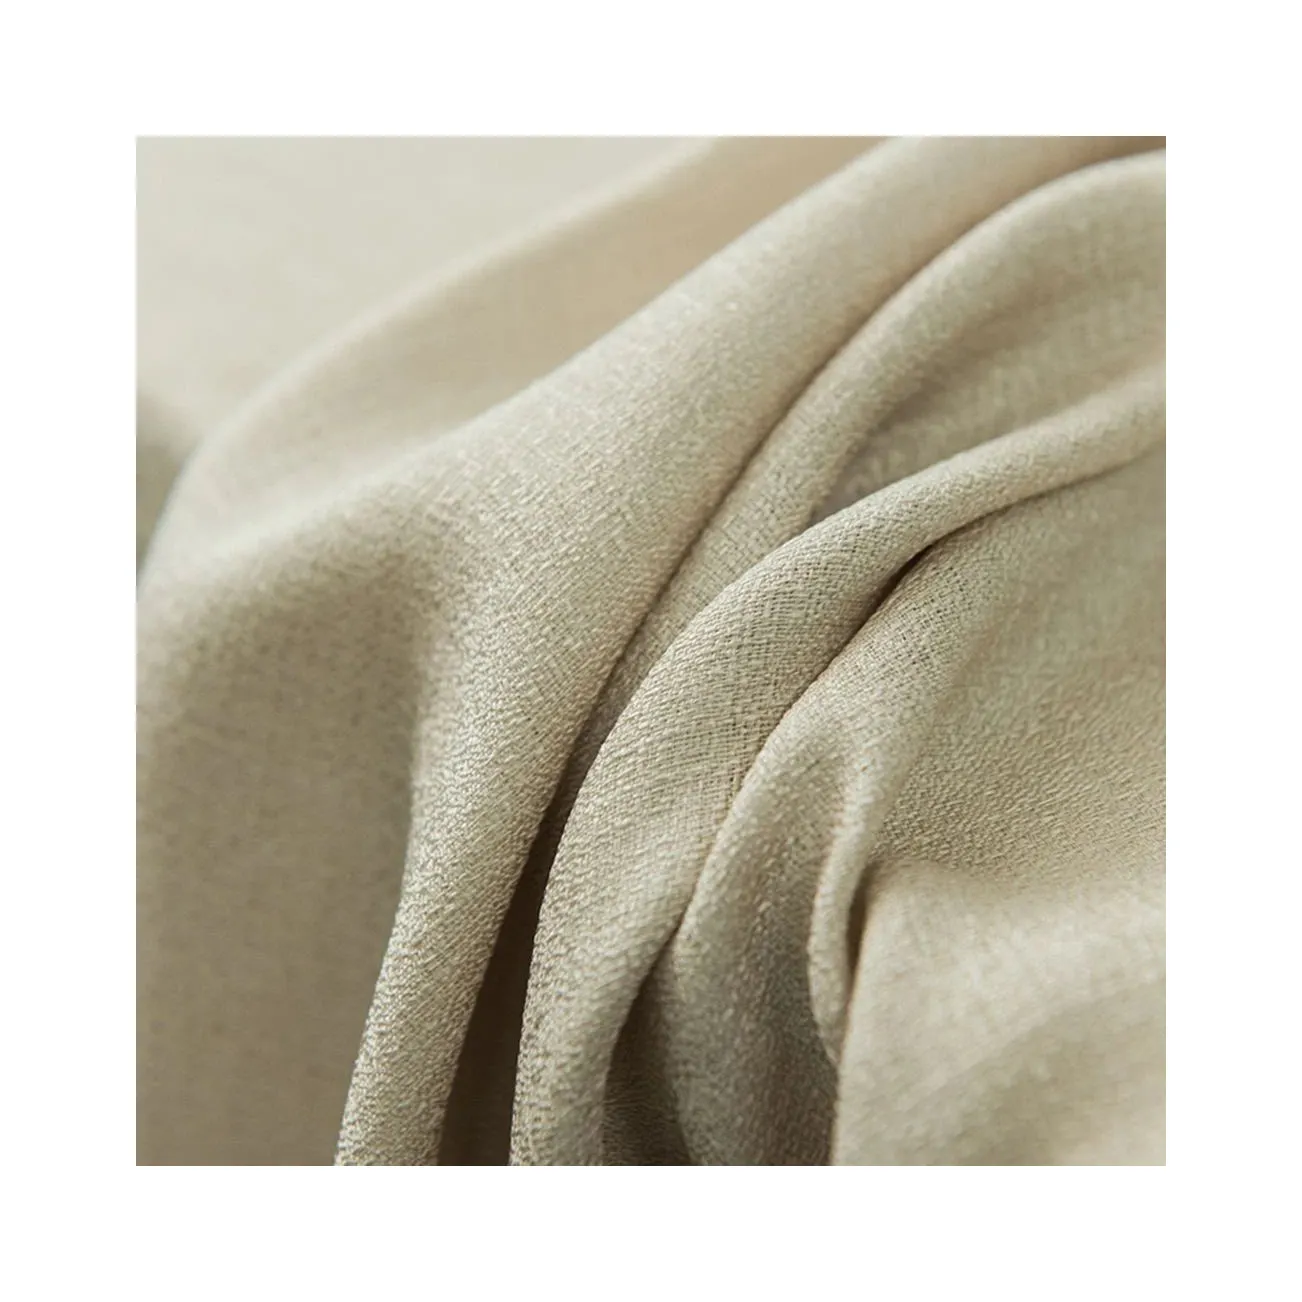 Özel teklif son Polyester 200 g/m keten tarzı tasarım tül perde kumaşı